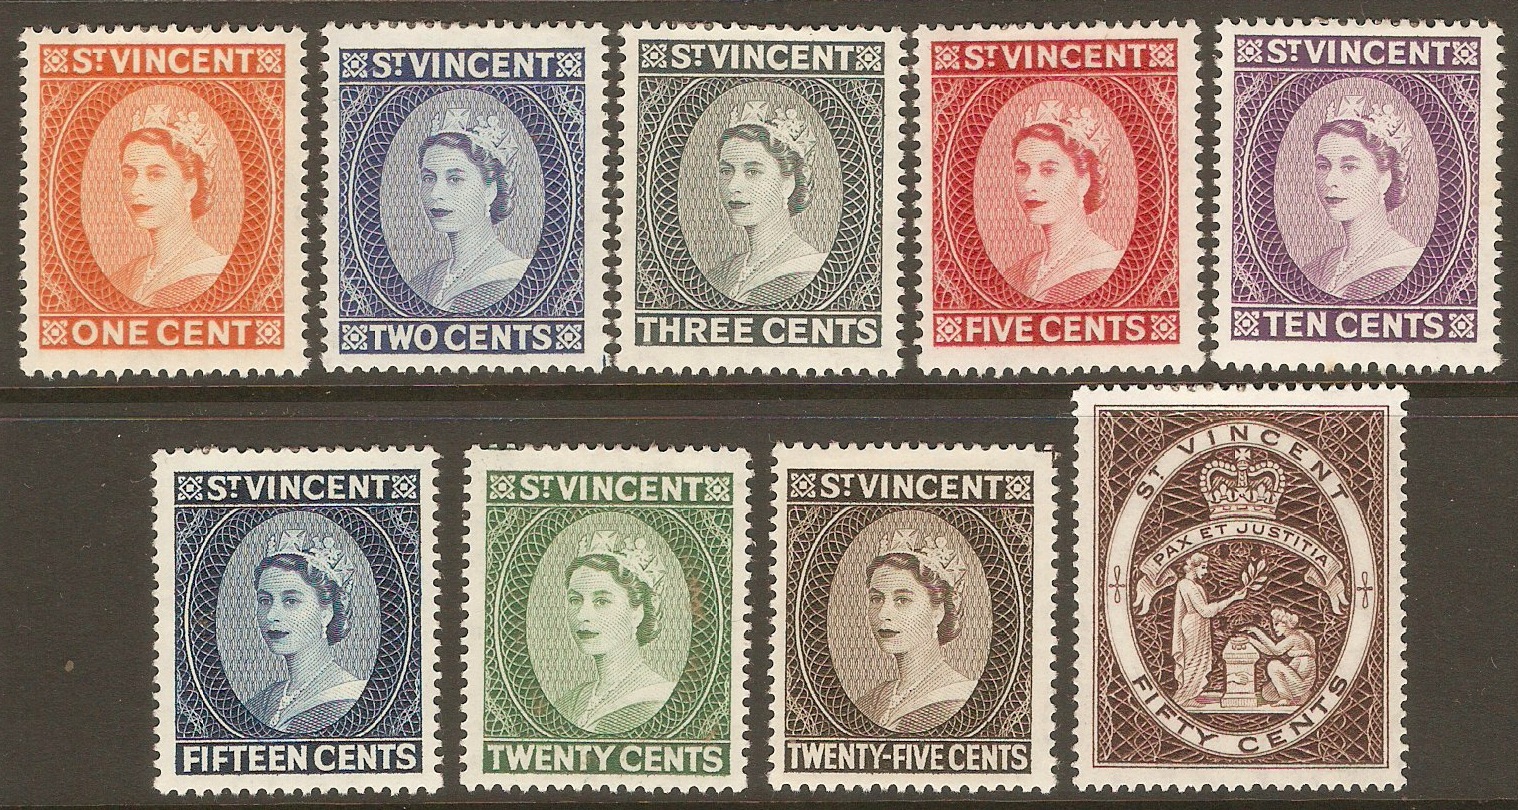 St Vincent 1964 Queen Elizabeth II definitives set. SG212-SG220.